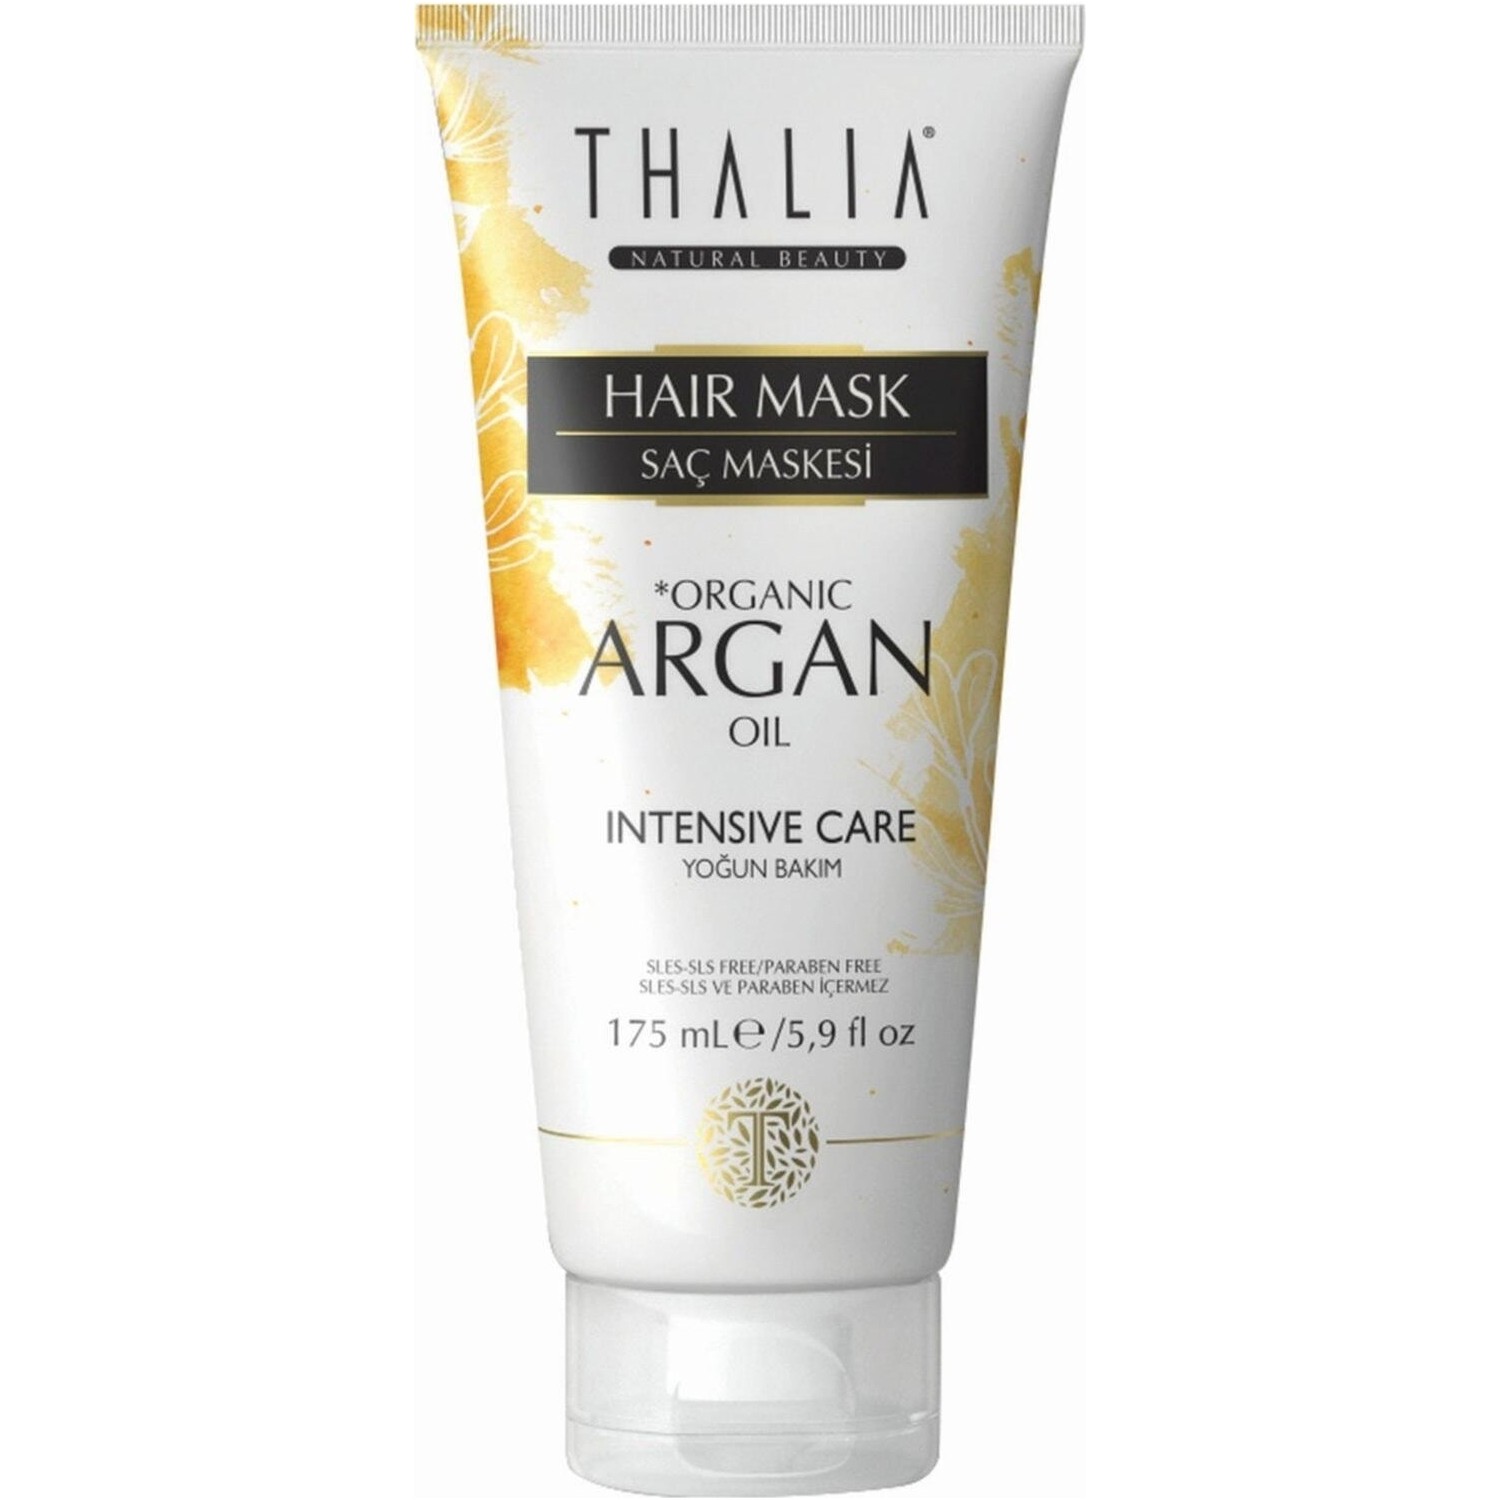 Увлажняющая маска Thalia Organic Argan Oil для волос, 175 мл крем краска для волос с аргановым маслом 9 4 очень светлый блондинзолотистый 100 мл